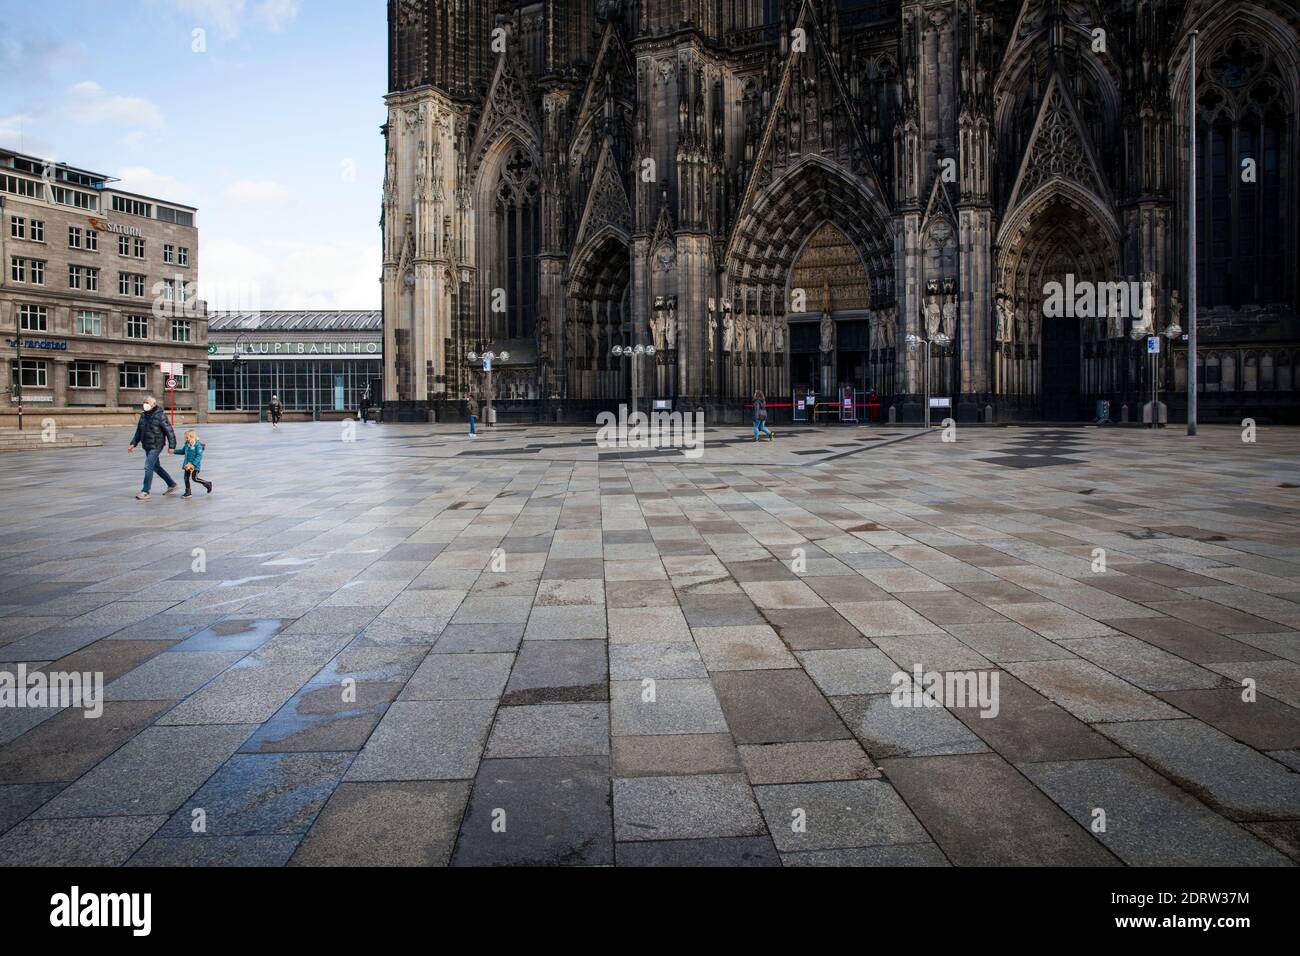 Corona Lockdown, 17 dicembre. 2020. La piazza quasi deserta intorno alla Cattedrale di Colonia, visitata solitamente da migliaia di persone, Colonia, Germania. Foto Stock